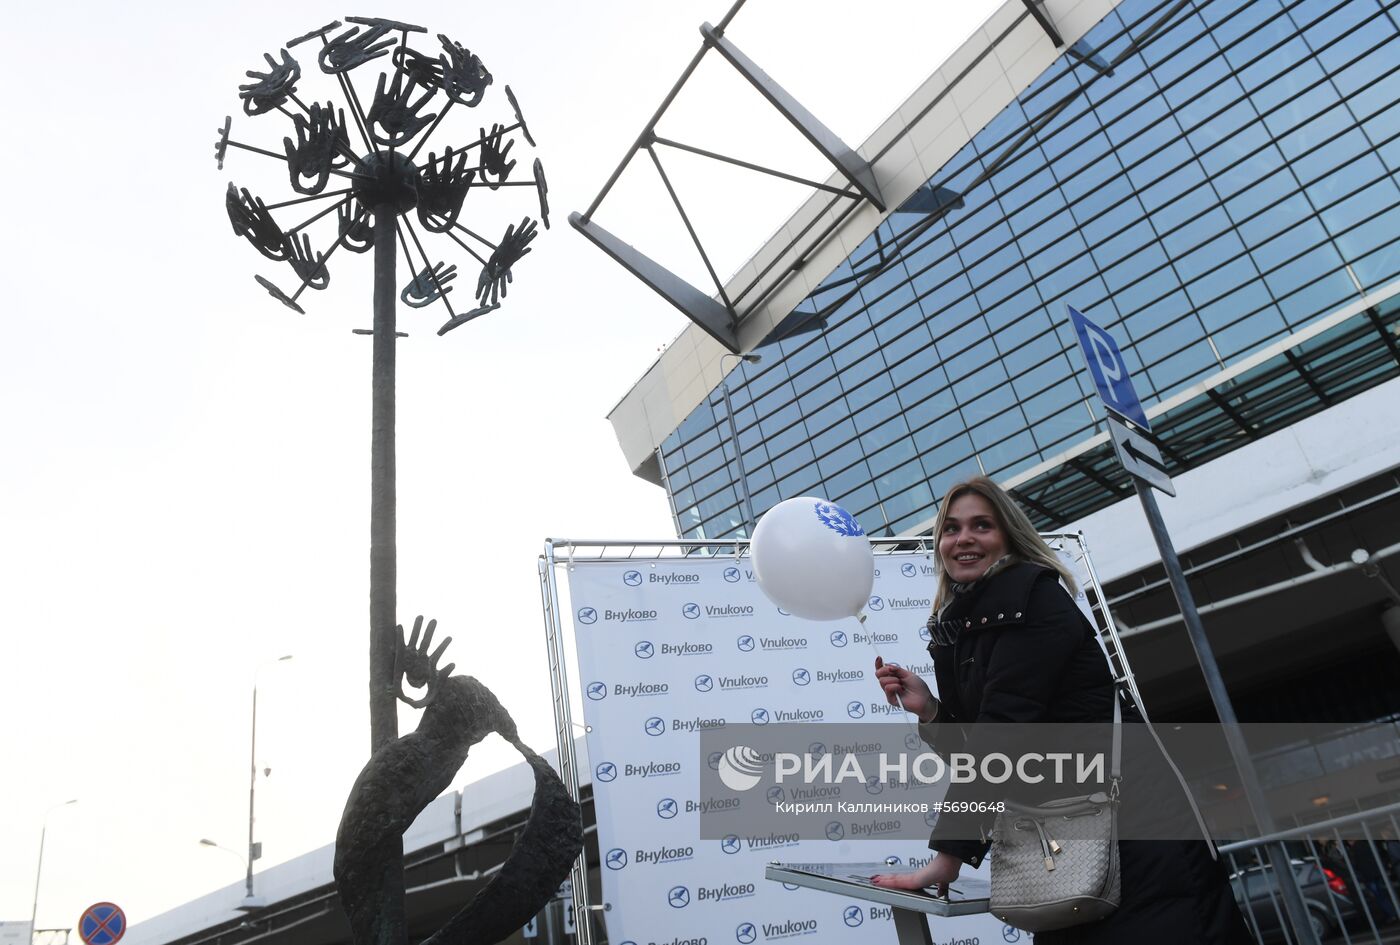 Открытие скульптурной композиции "Одуванчик" в аэропорту Внуково